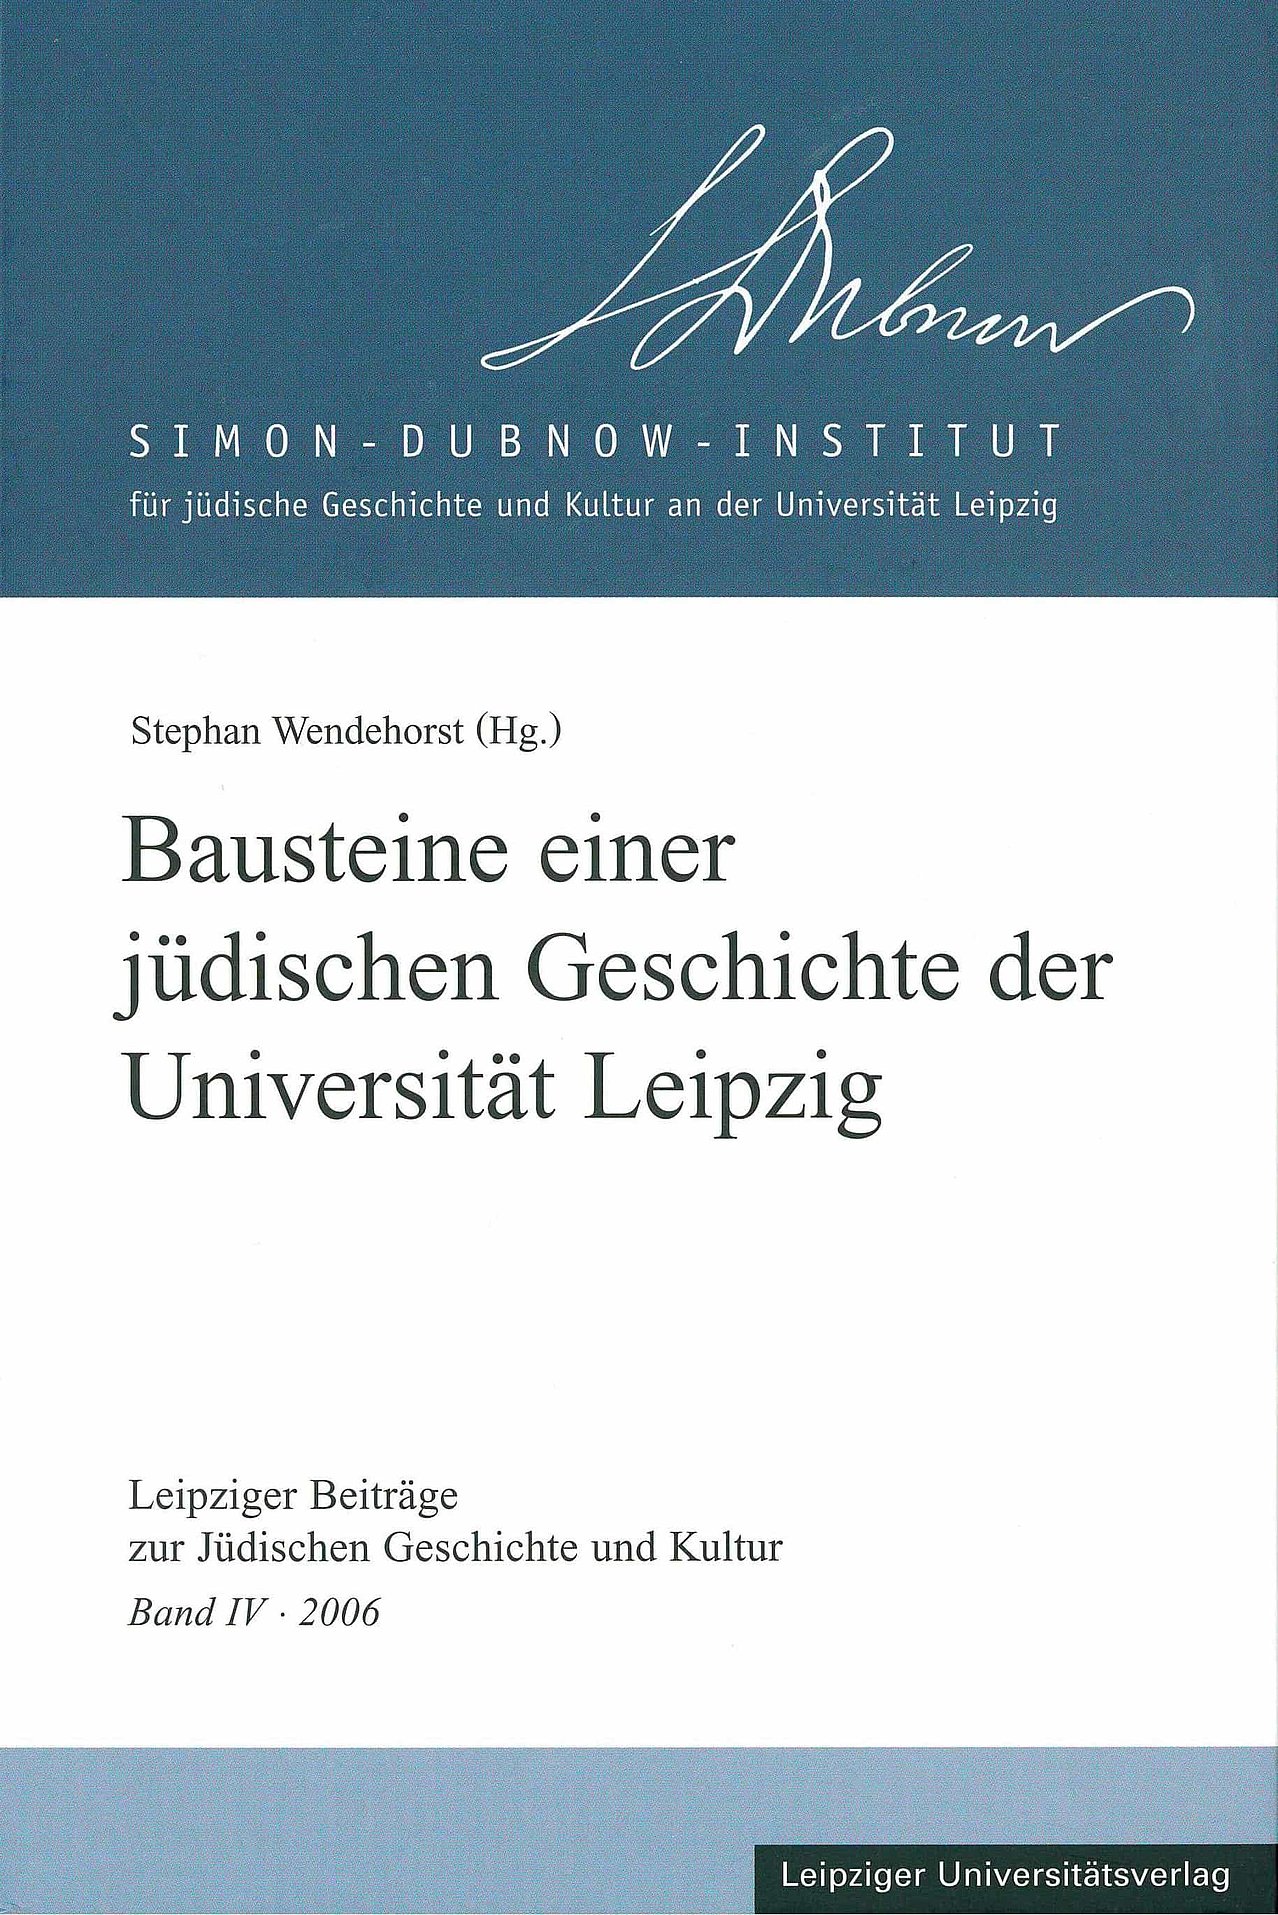 Leipziger Beiträge, Bausteine einer jüdischen Geschichte der Universität Leipzig, 2006